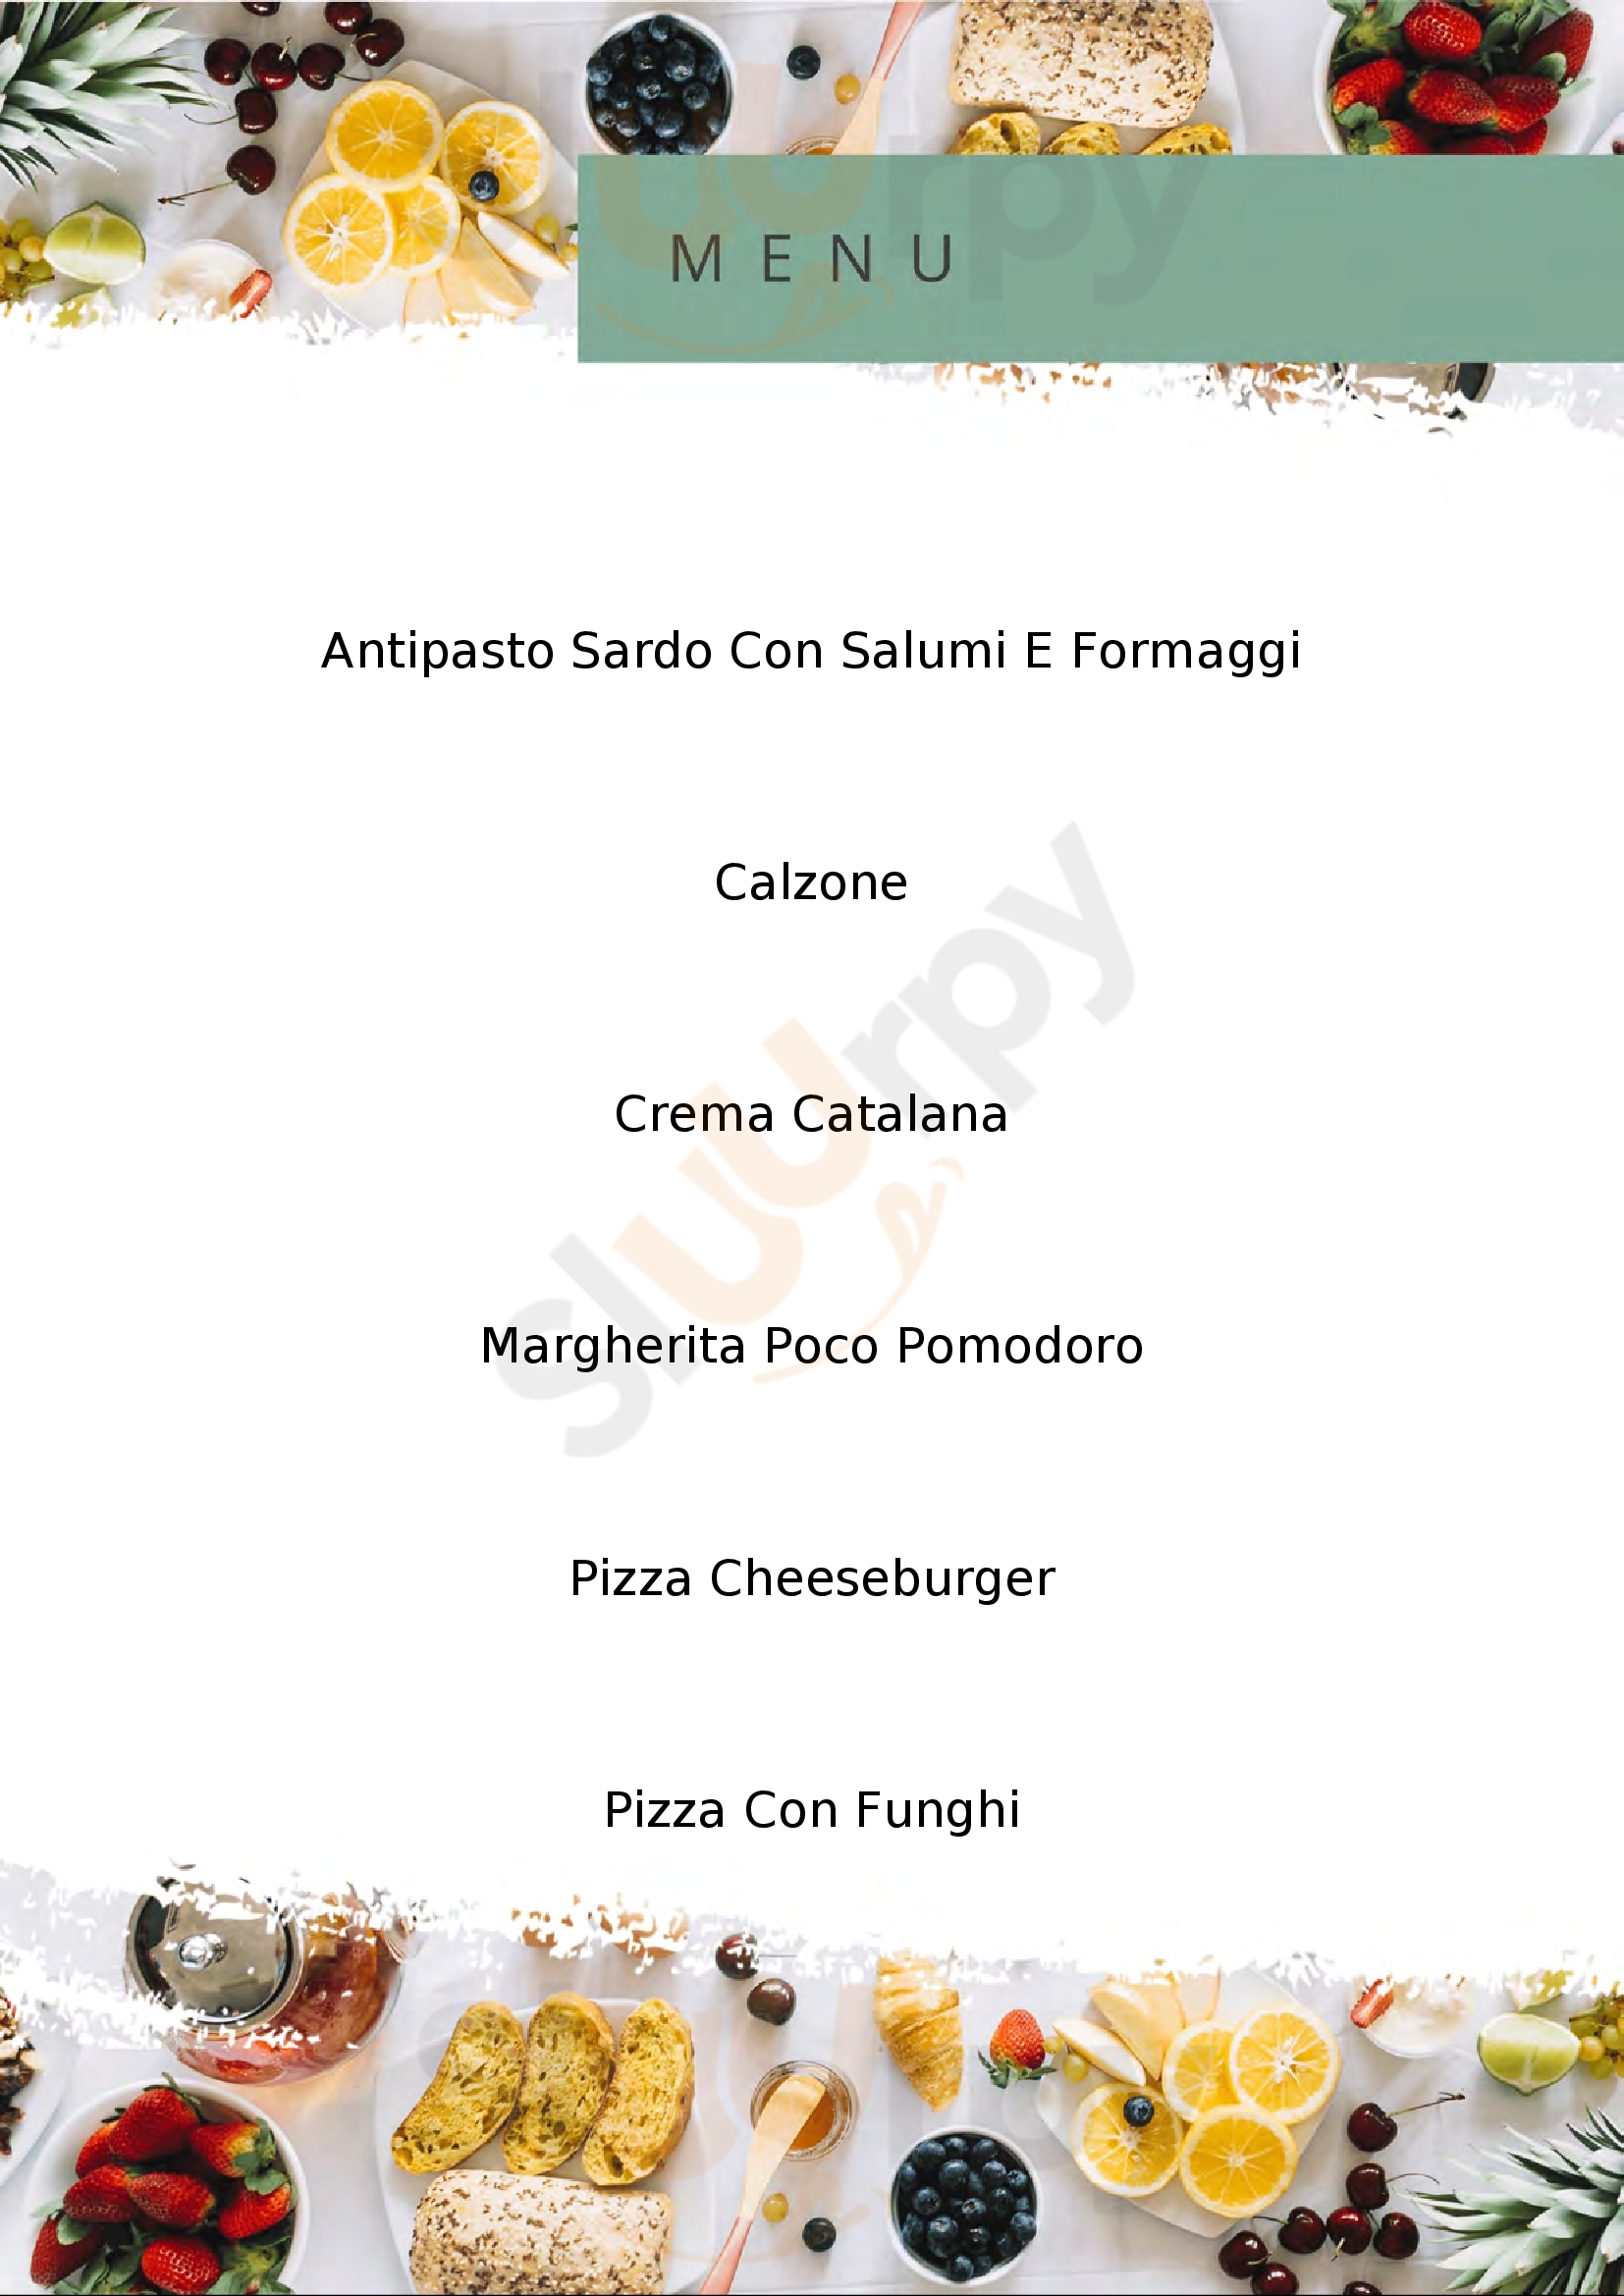 Pizzeria Le 100 Pizze D&V Alghero menù 1 pagina